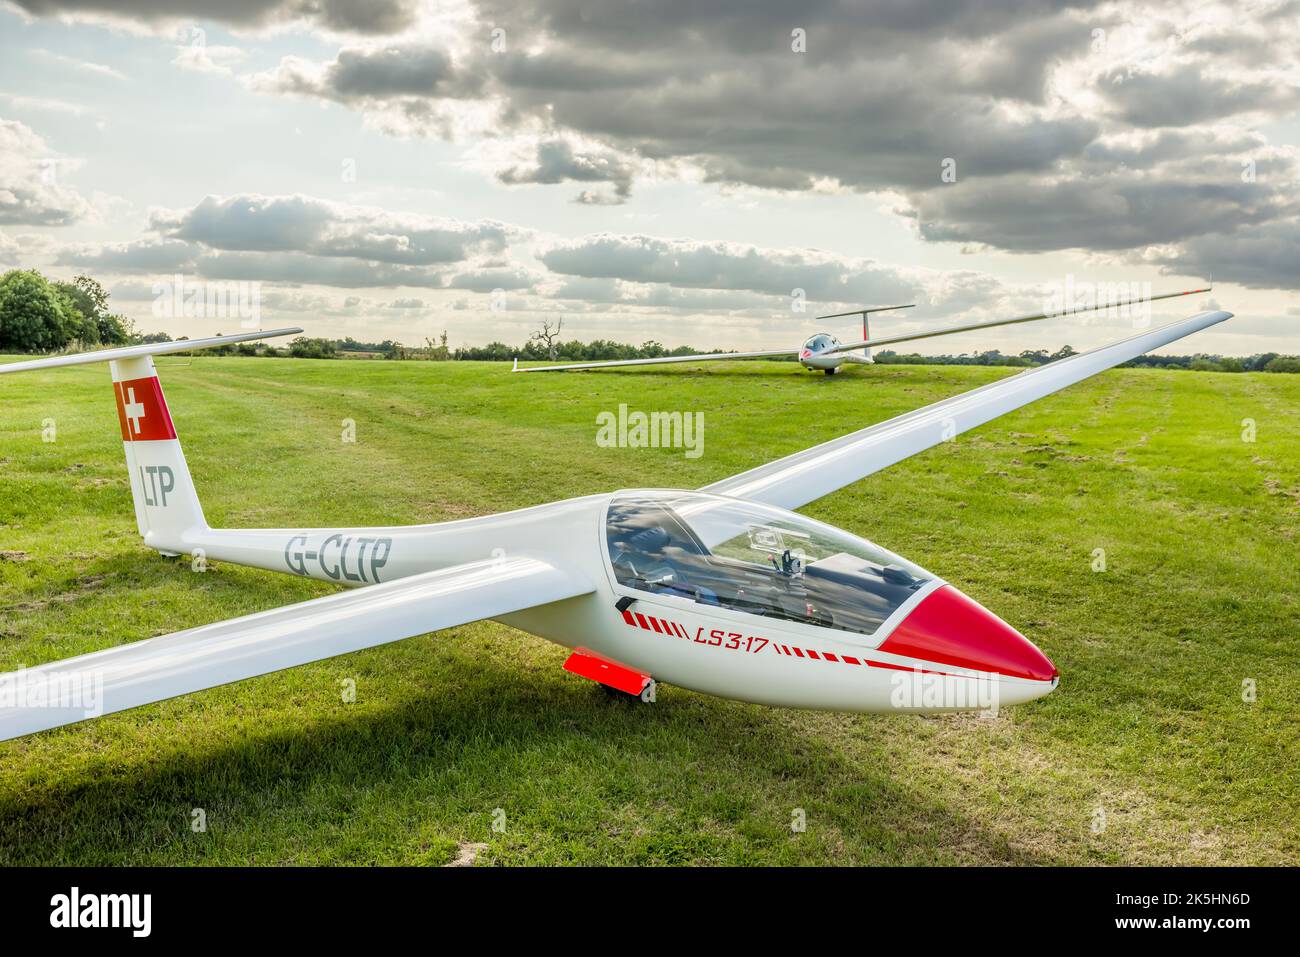 BUCKINGHAMSHIRE, Großbritannien - 24. August 2021. Gleitschirm auf einem Grasflugplatz geparkt. Segelflugzeuge oder Segelflugzeuge. Stockfoto